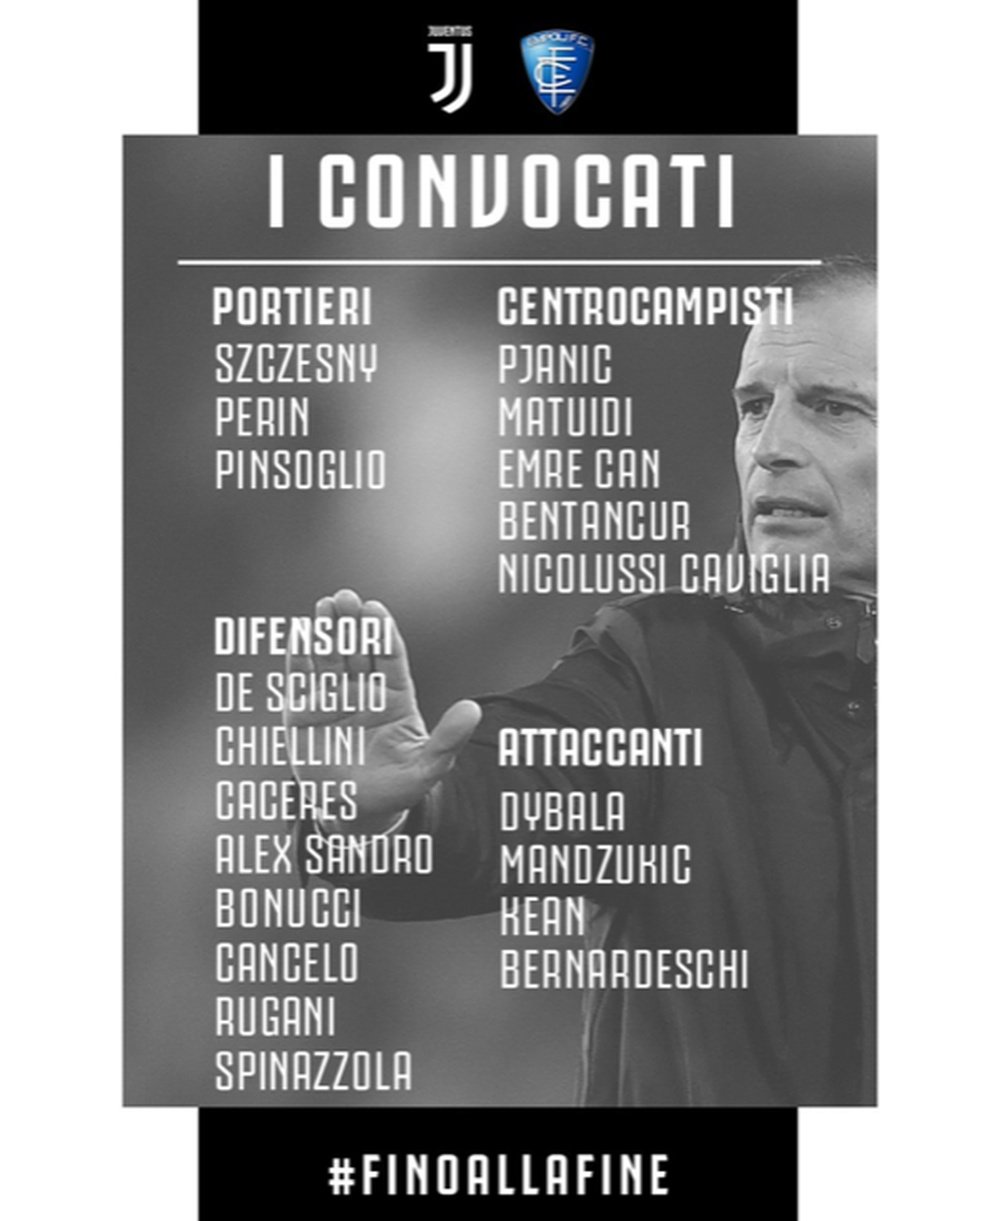 I convocati della Juve per l'Empoli, Serie A 18/19. Twitter/JuventusFc